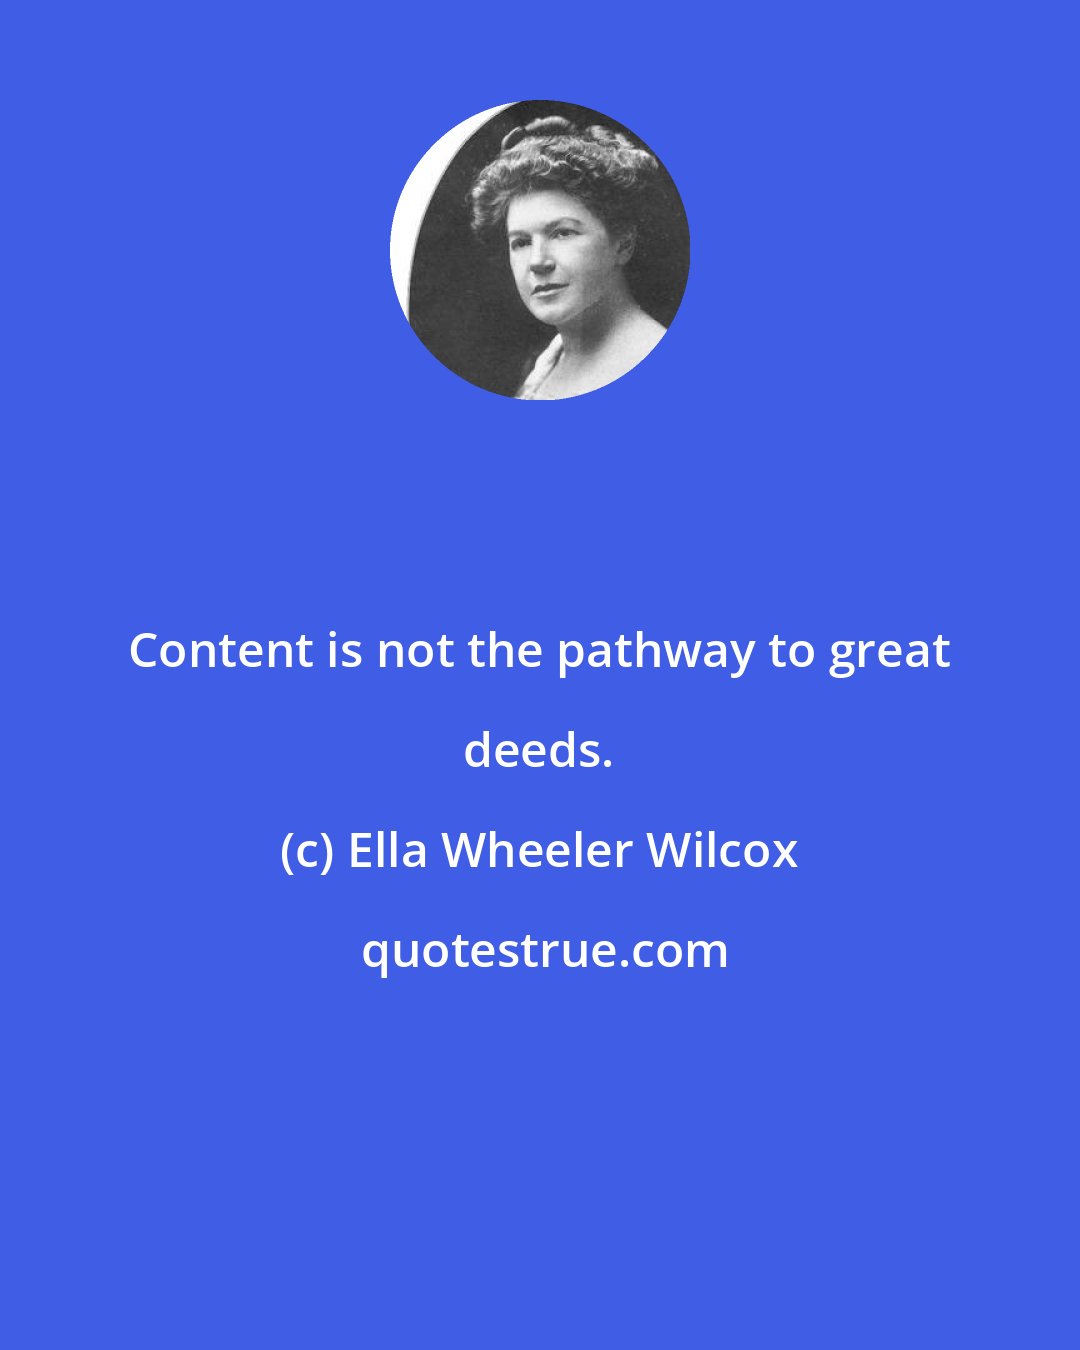 Ella Wheeler Wilcox: Content is not the pathway to great deeds.